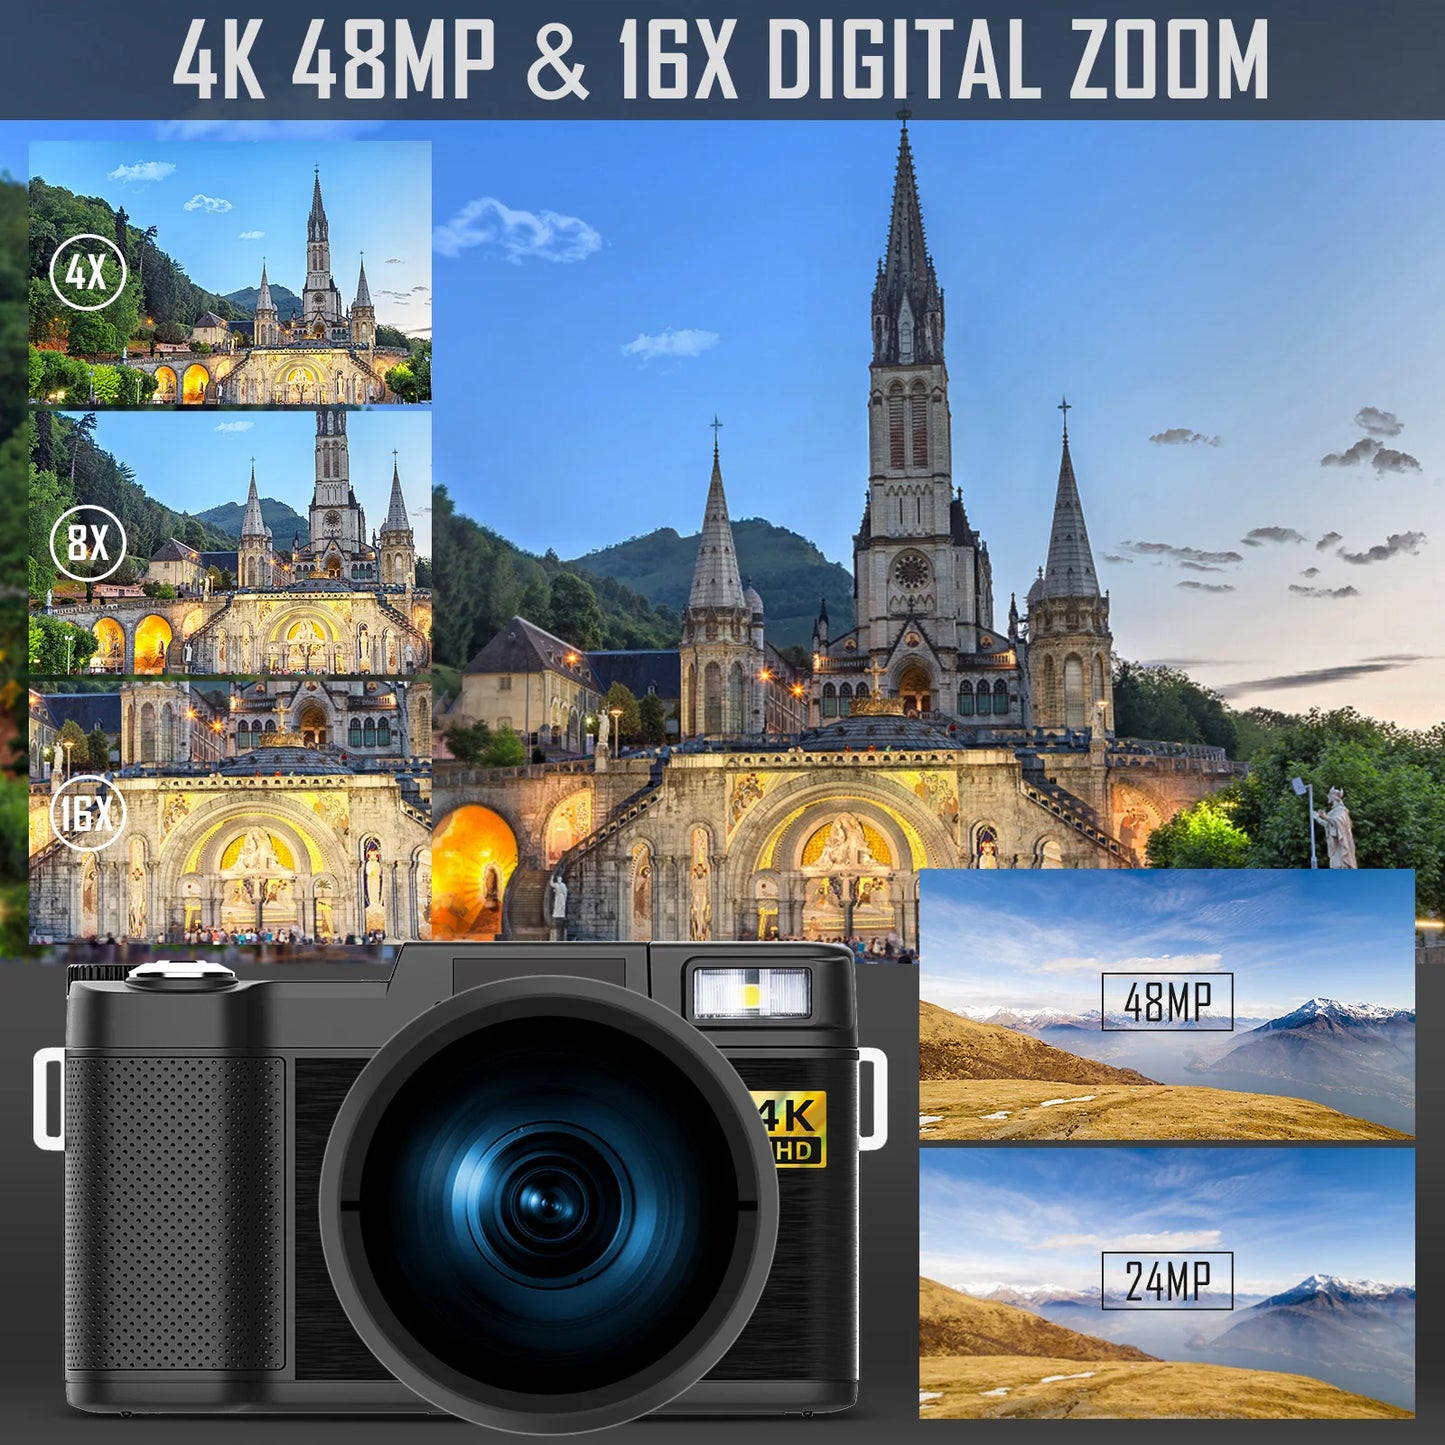 4k Digital Cameras